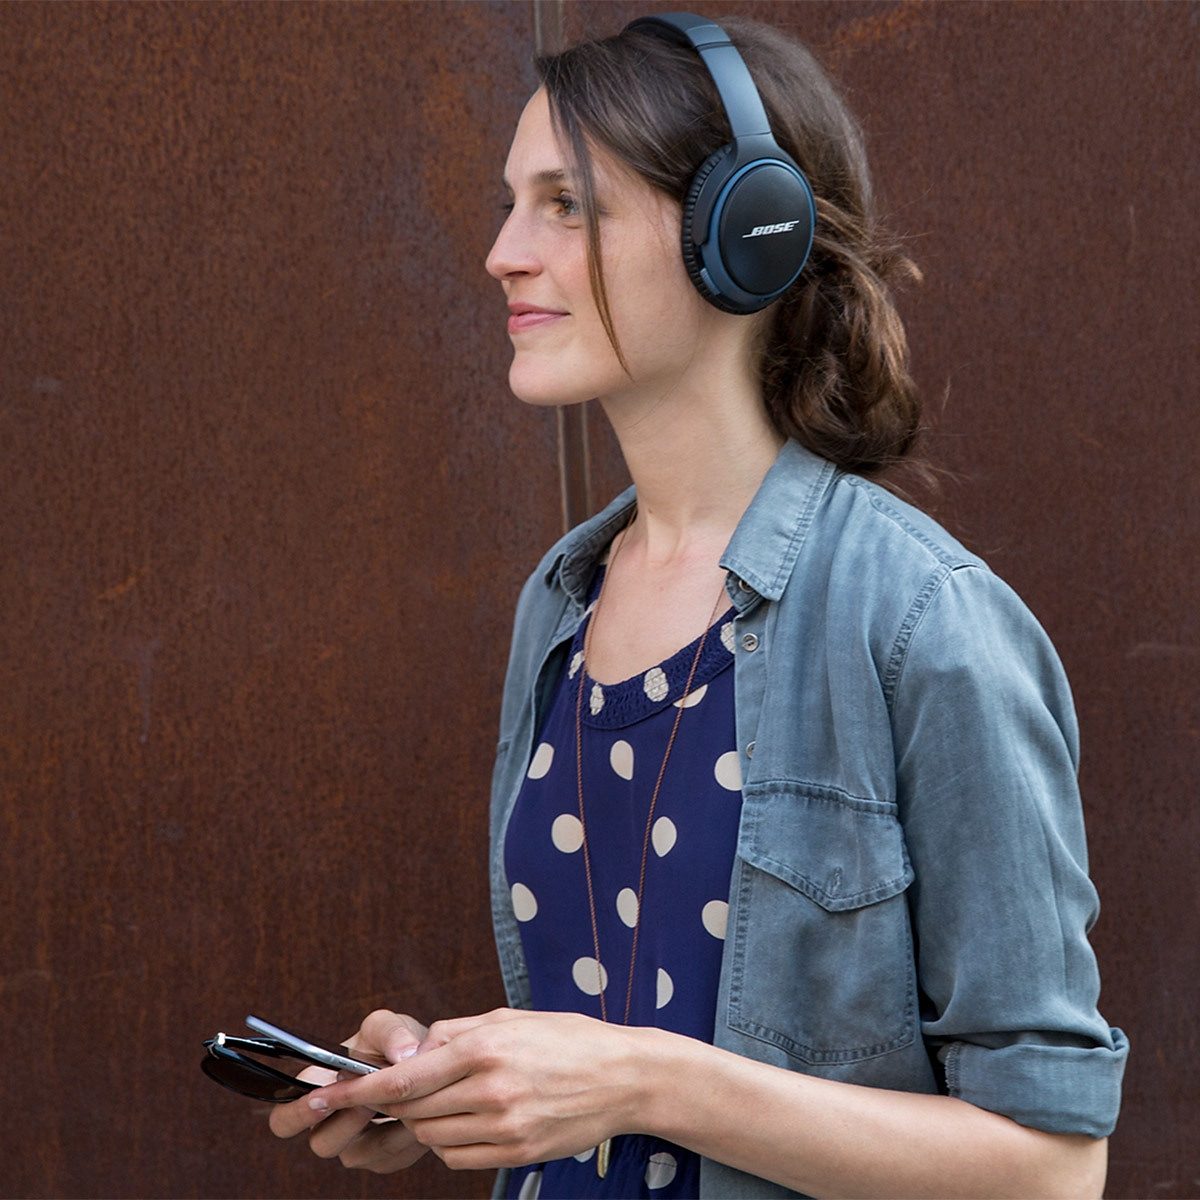 Bose »SoundLink Around-Ear« Over-Ear-Kopfhörer (Bluetooth) online kaufen |  OTTO